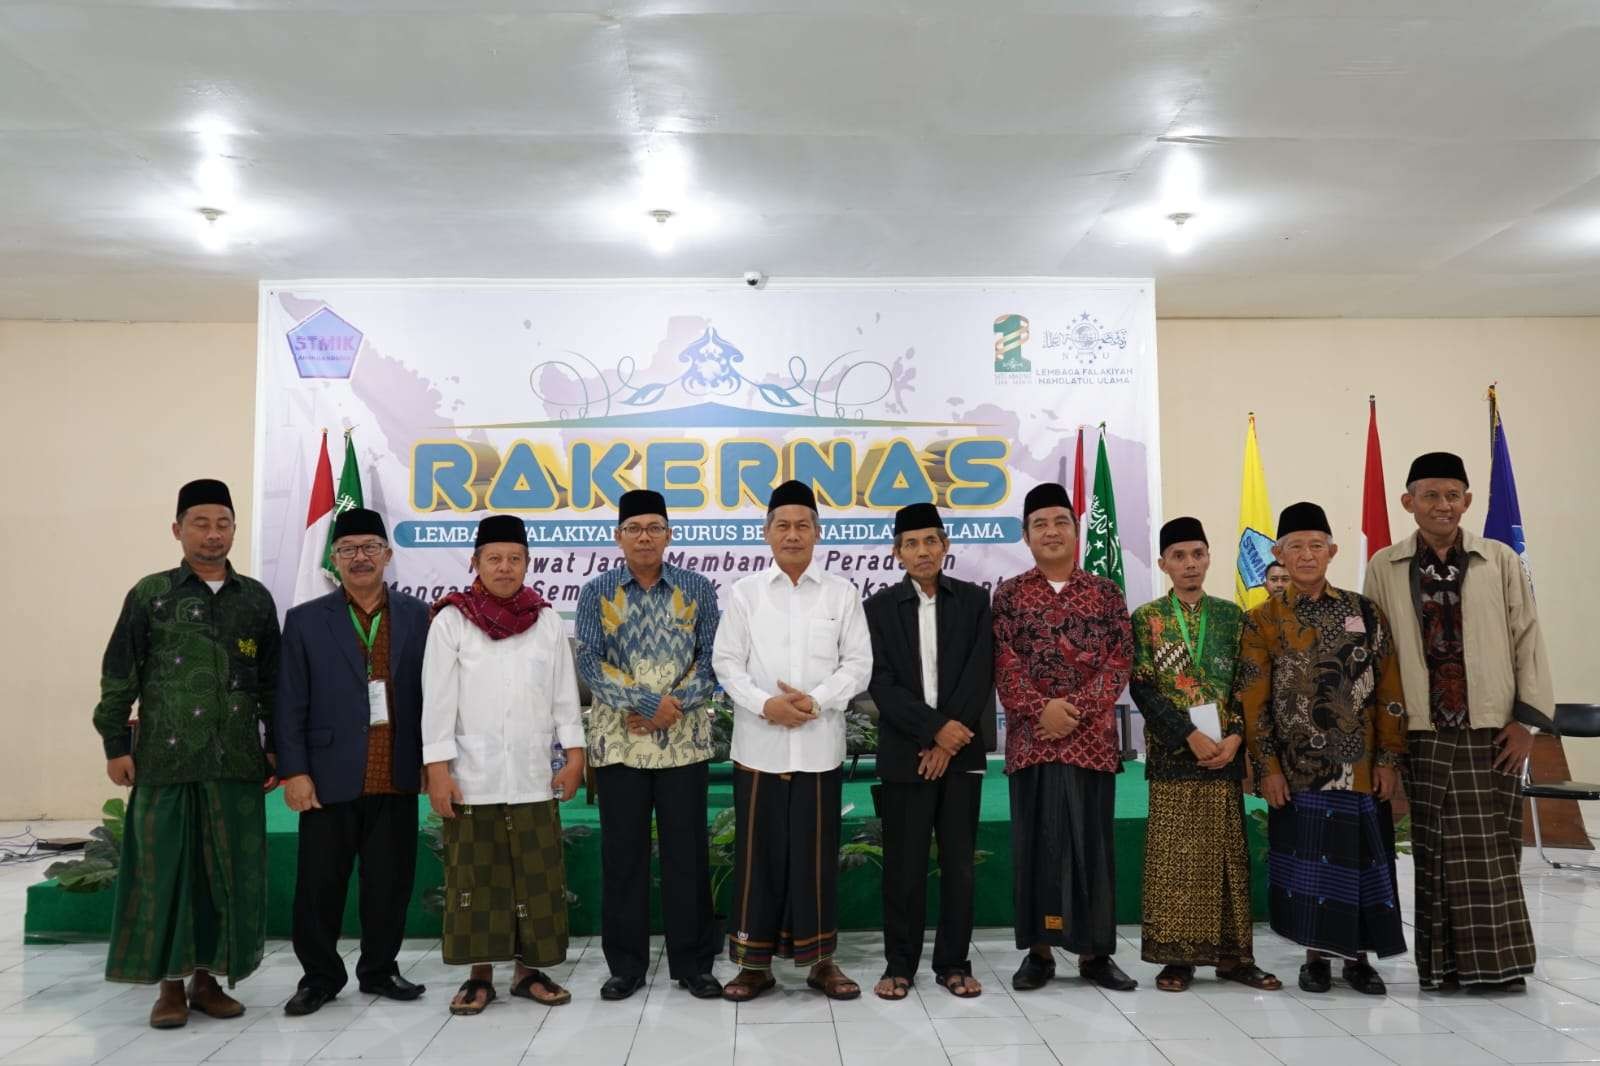 Lembaga Falakiyah Pengurus Besar Nahdlatul Ulama (LF PBNU) menyelenggarakan Rapat Kerja Nasional (Rakernas) di STMIK/AMIK Bandung. (Foto: lf pbnu)